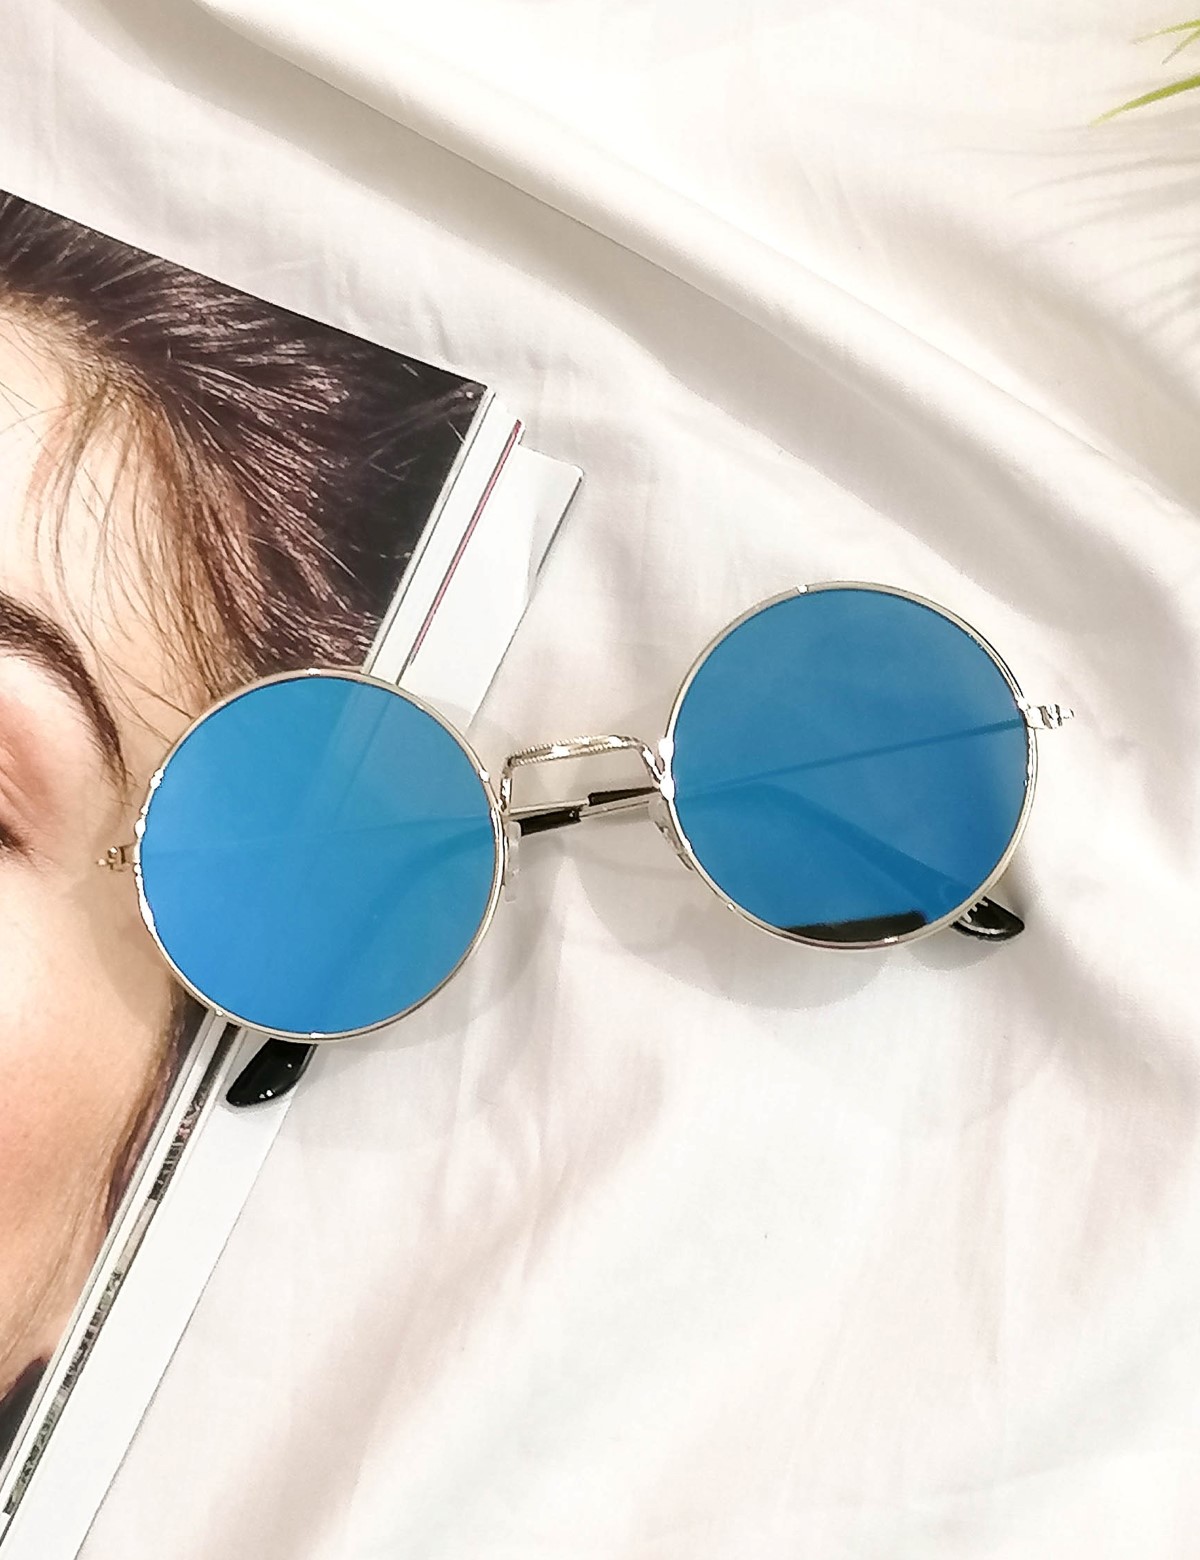 Huxley and Grace Γυναικεία μπλε στρογγυλά γυαλιά ηλίου καθρέπτης με χρυσό σκελετό Luxury LS6110D